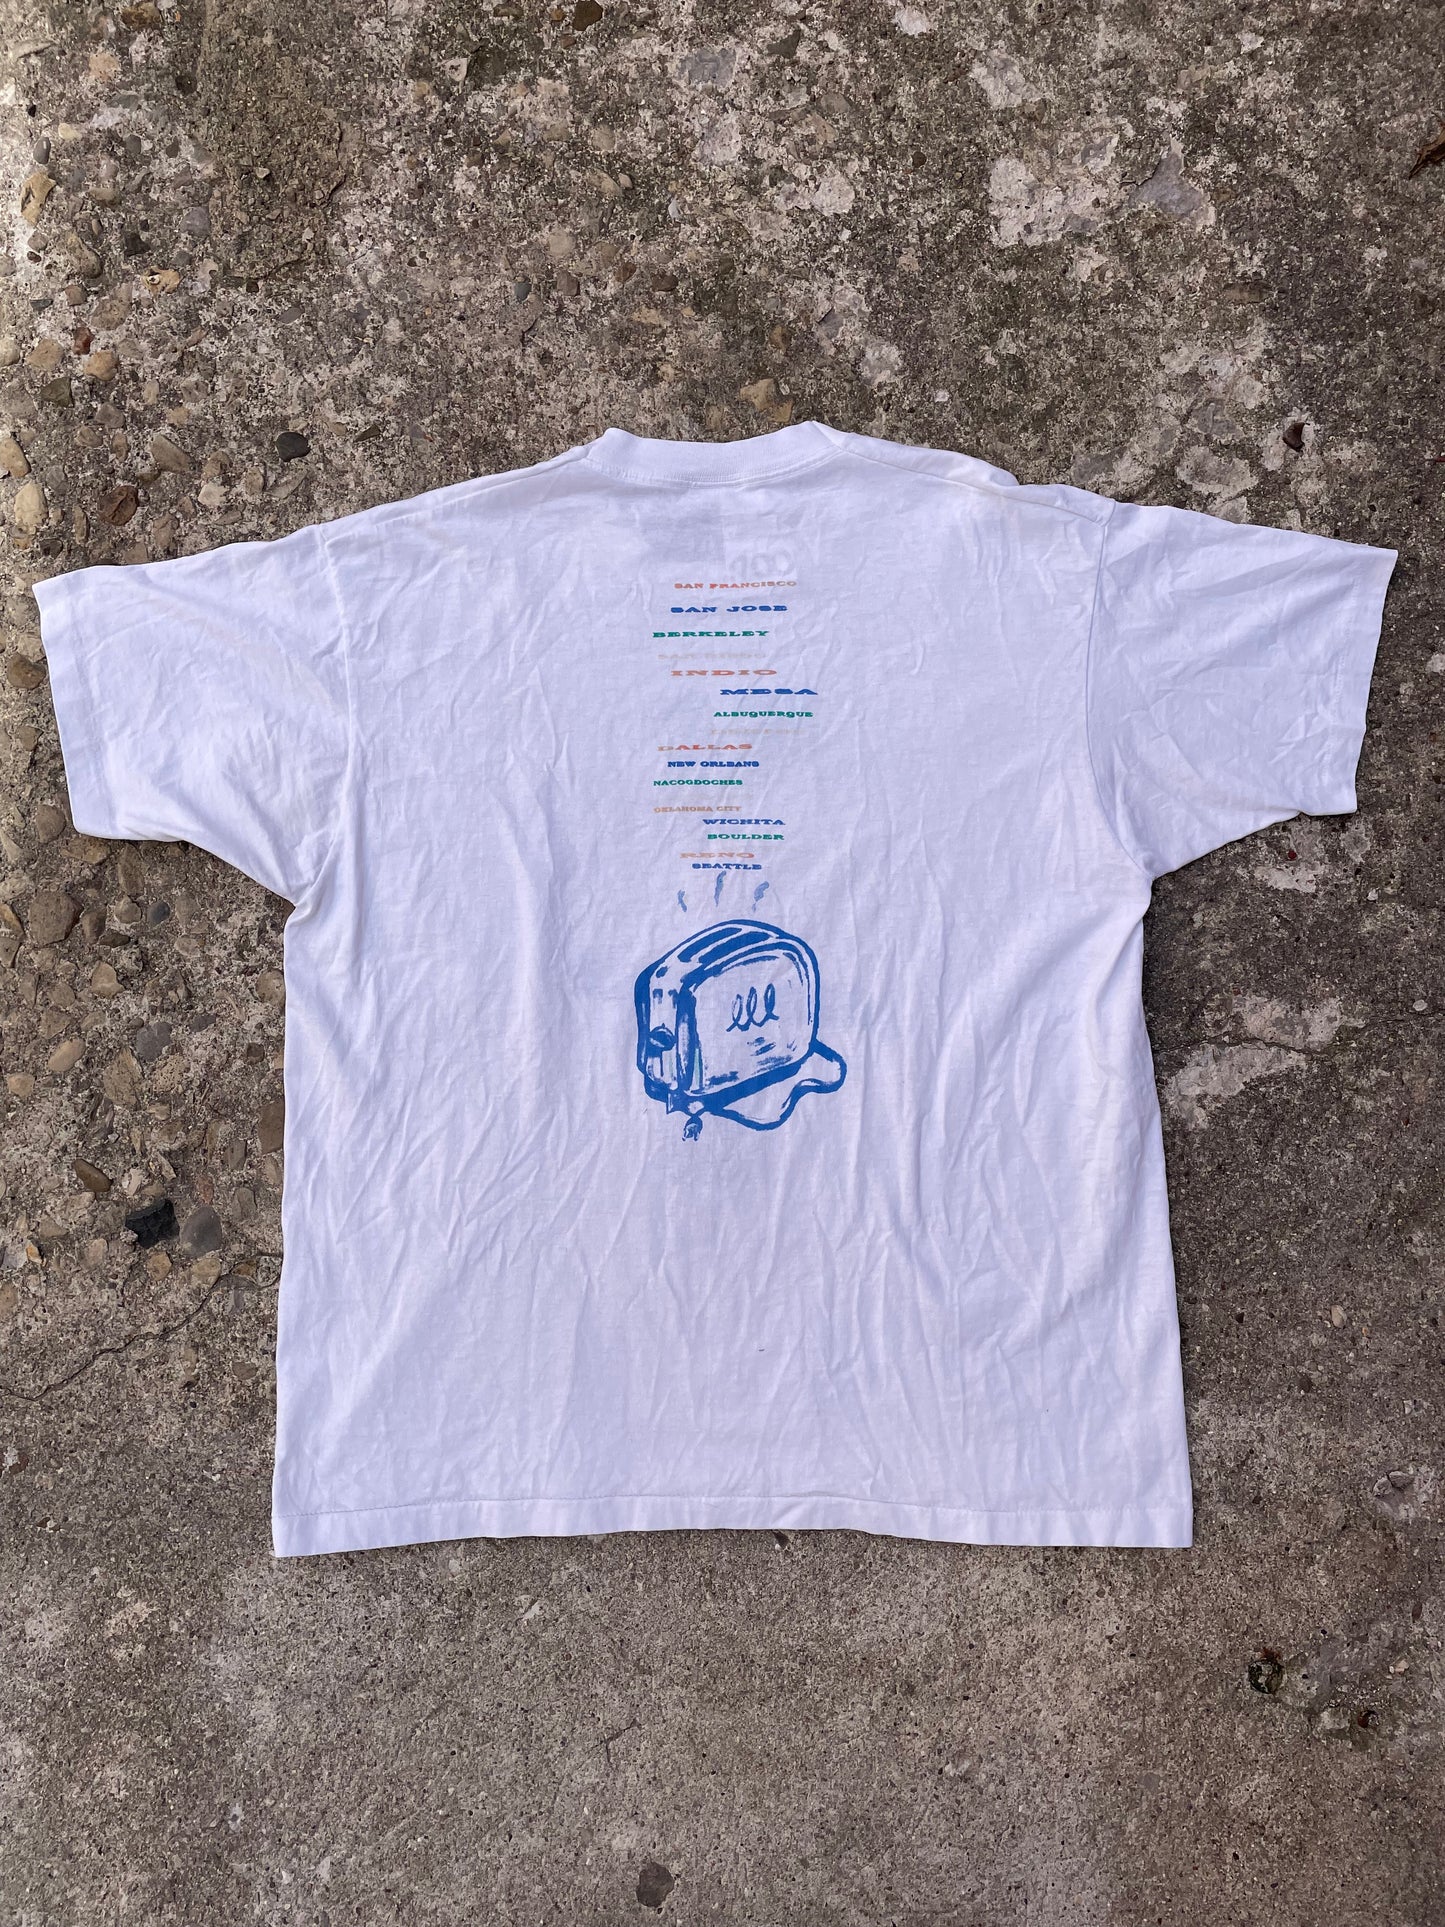 1994 Pearl Jam Freak Shallow Puppet Tour Band T-Shirt - XL